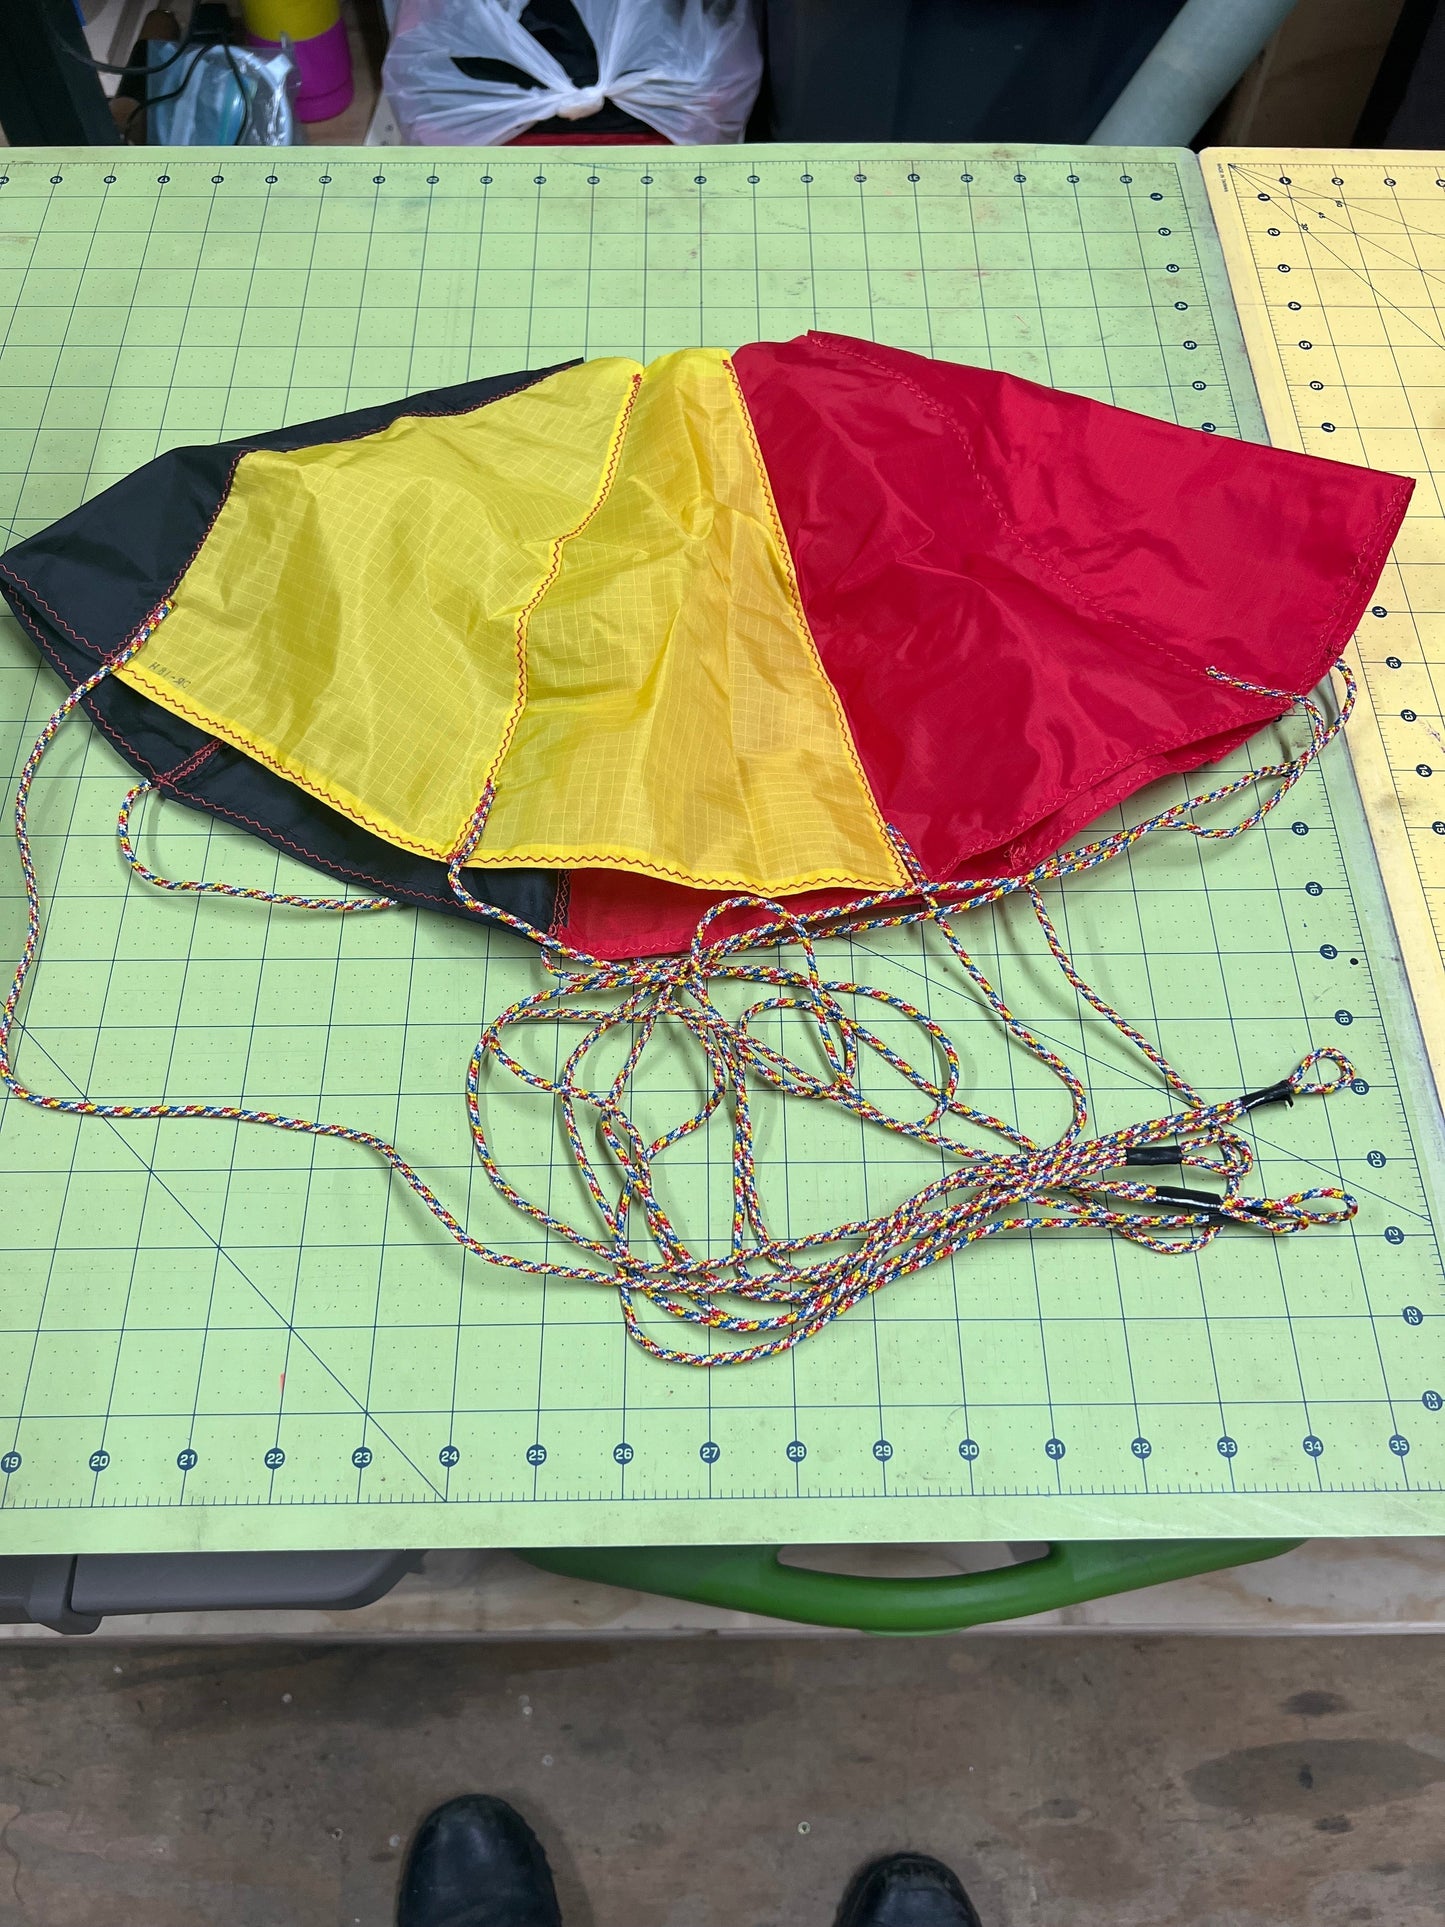 DR-H84 Hemispherical Parachute